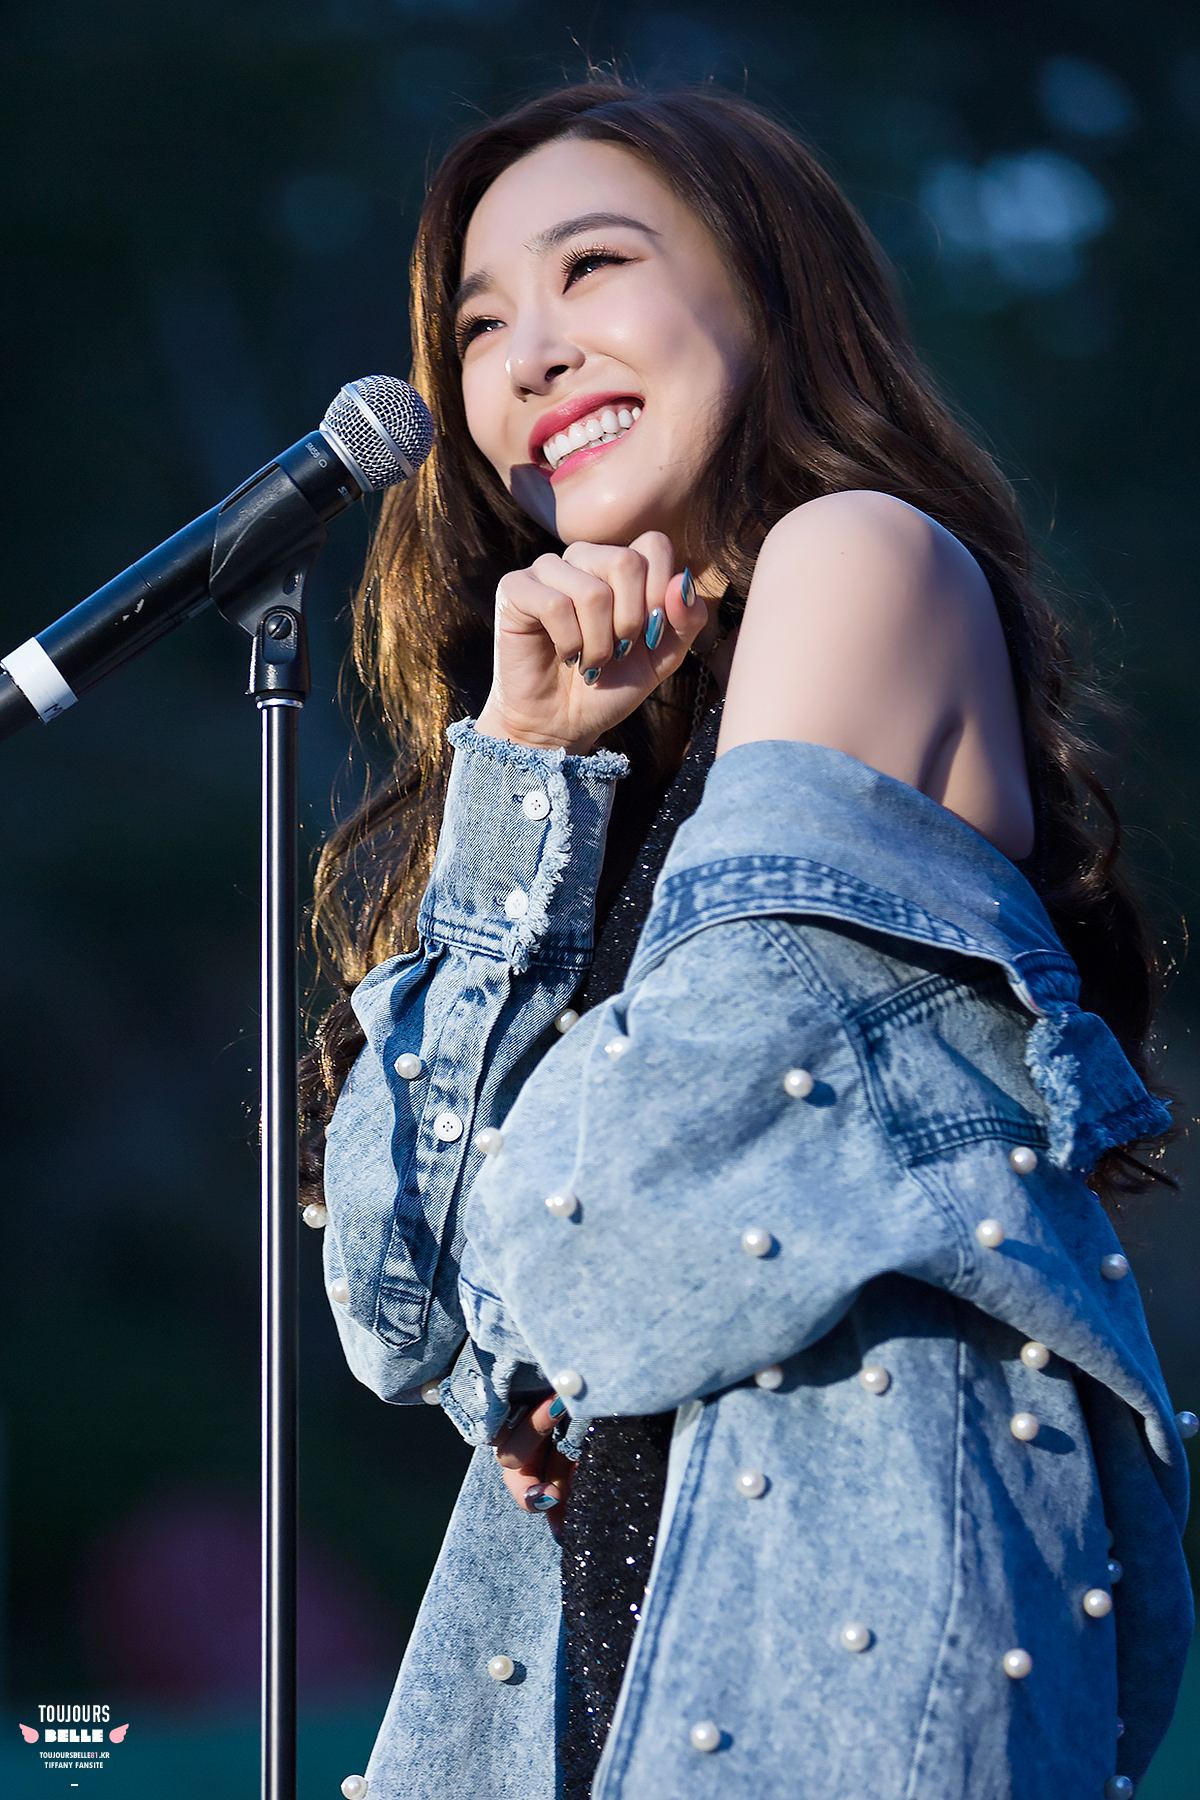 [PIC][21-04-2017]Tiffany khởi hành đi LA – Mỹ để tham dự "The 15th Korea Times Music Festival 2017" vào tối nay - Page 3 34012509550_85a1a3c24f_o